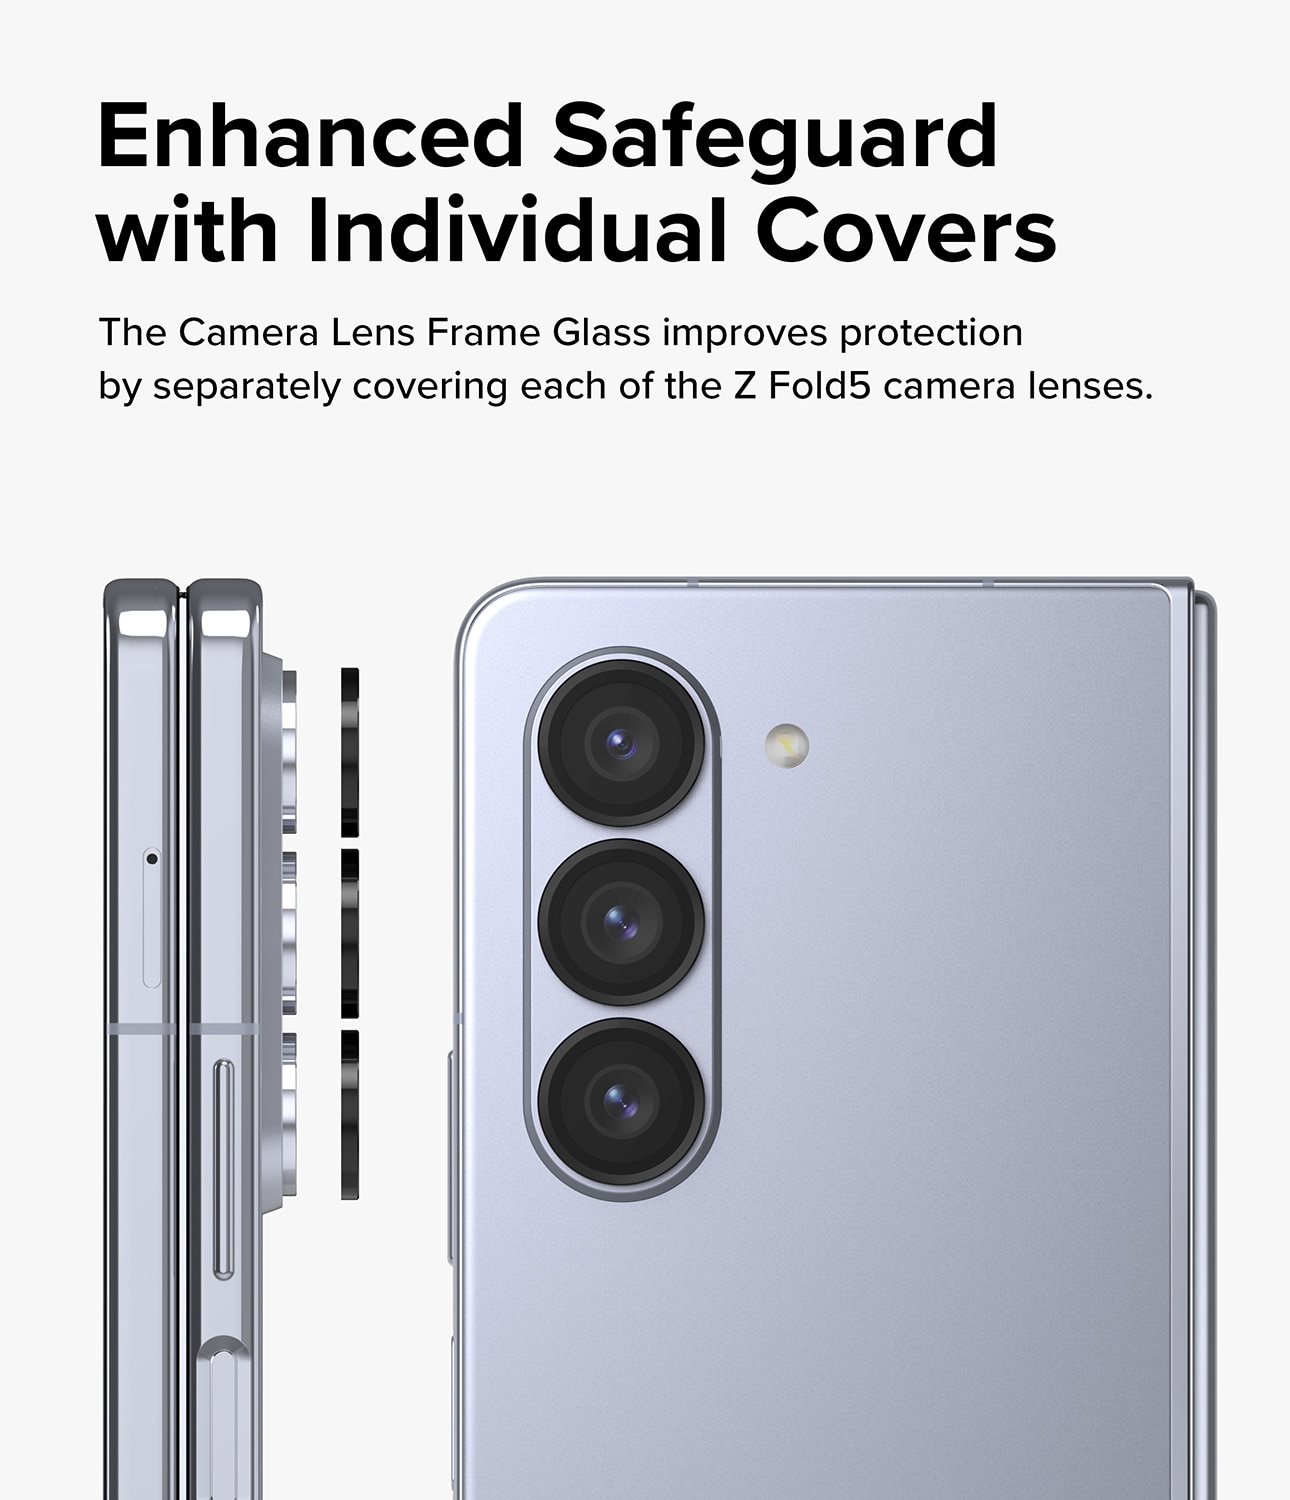 Samsung Galaxy Z Fold 5 Camera Lens Frame Glass Black